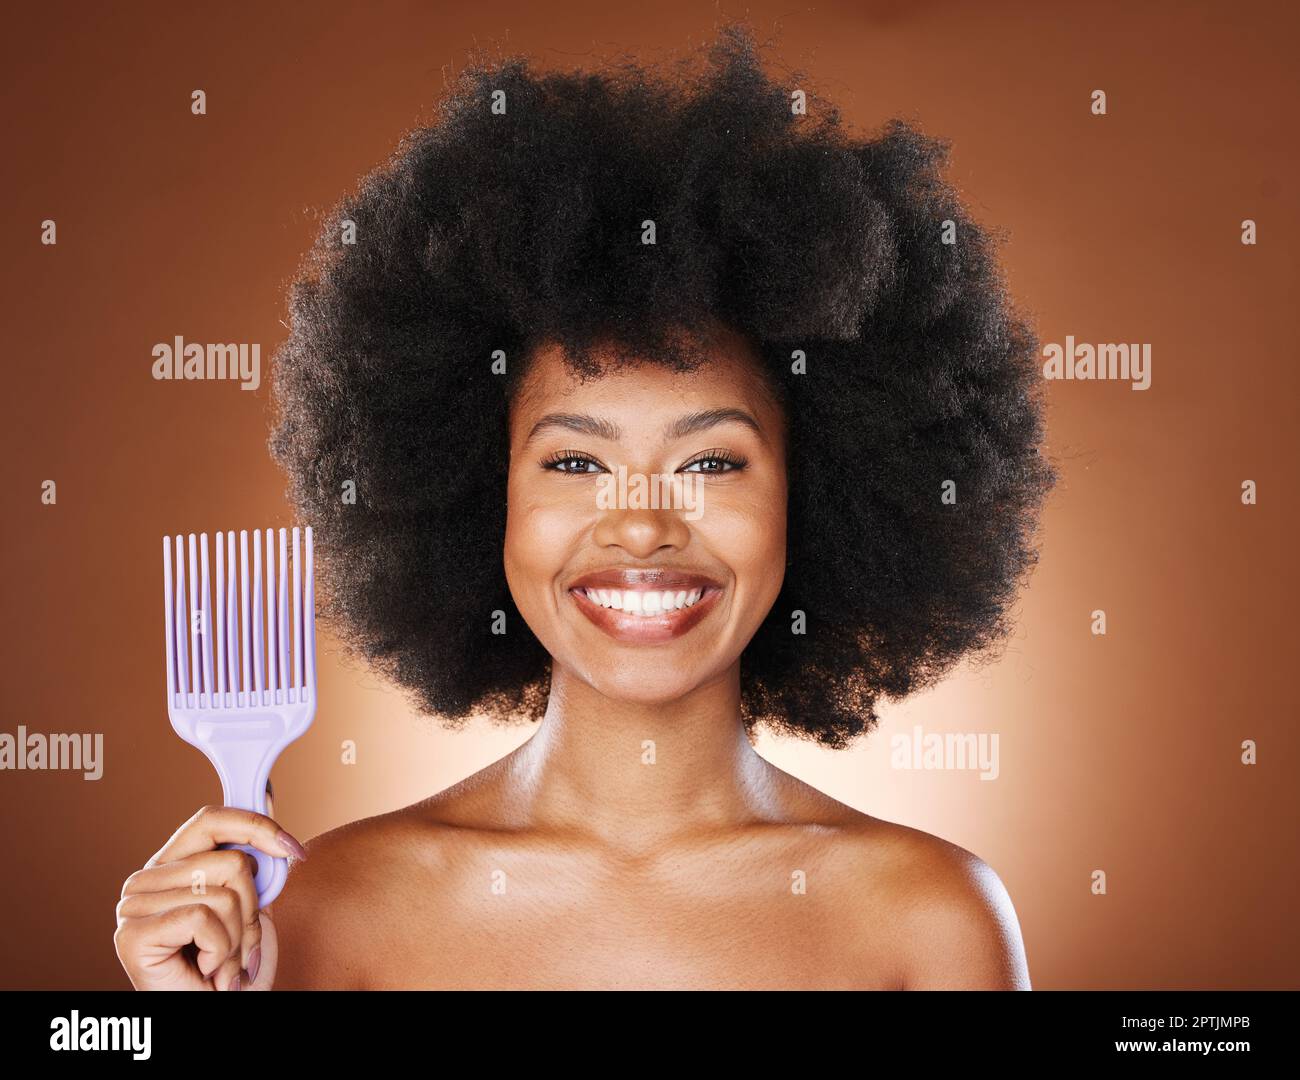 Soins capillaires, afro et portrait de femme noire avec peigne pour le bien-être,  le soin de toilettage ou la croissance saine des cheveux. Salon, brosse et  visage de l'Afrique Photo Stock -